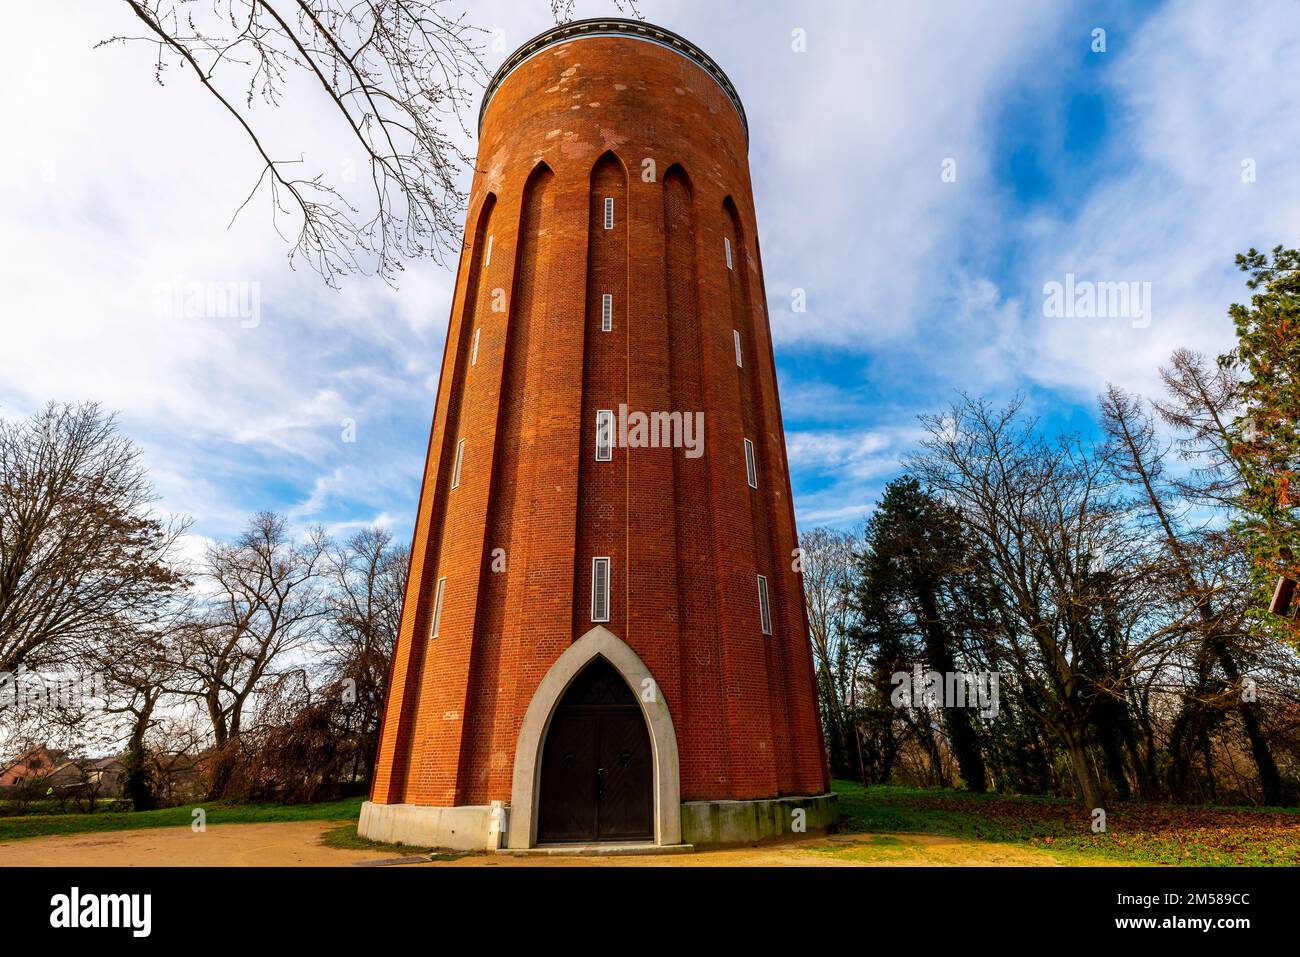 Brick-built constructed circular water tower. Rue du 6 Février 1945. Ensisheim, Alsace, France. Stock Photo